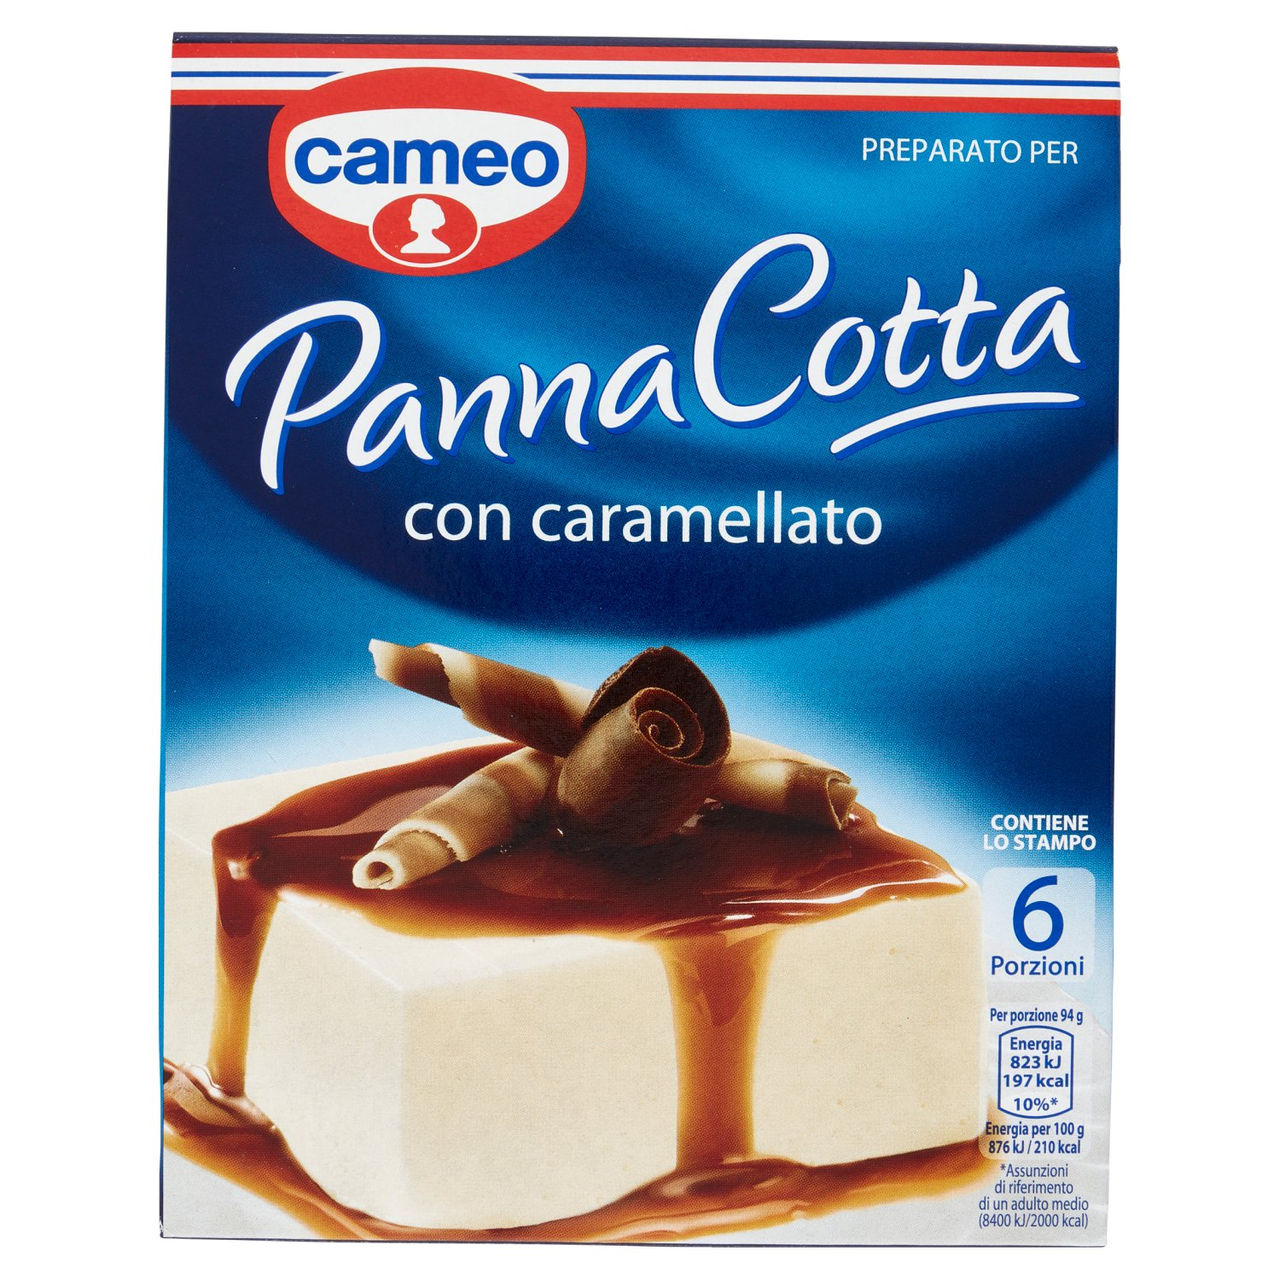 Preparato per Panna Cotta Cameo in vendita online